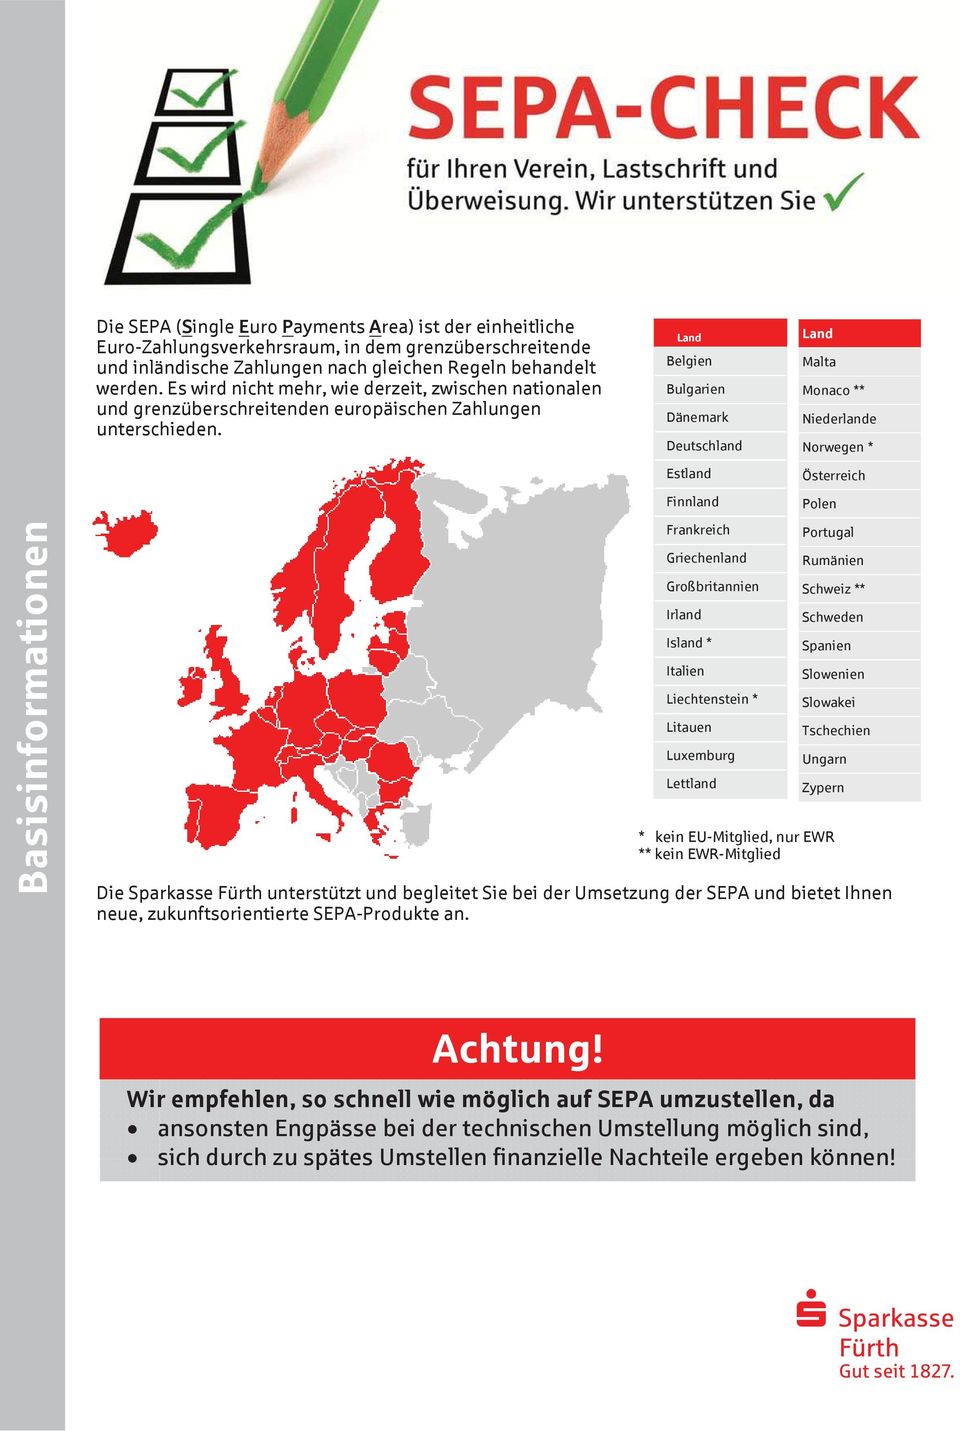 * kein EU-Mitglied, nur EWR ** kein EWR-Mitglied Die Sparkasse unterstützt und begleitet Sie bei der Umsetzung der SEPA und bietet Ihnen neue, zukunftsorientierte SEPA-Produkte an.